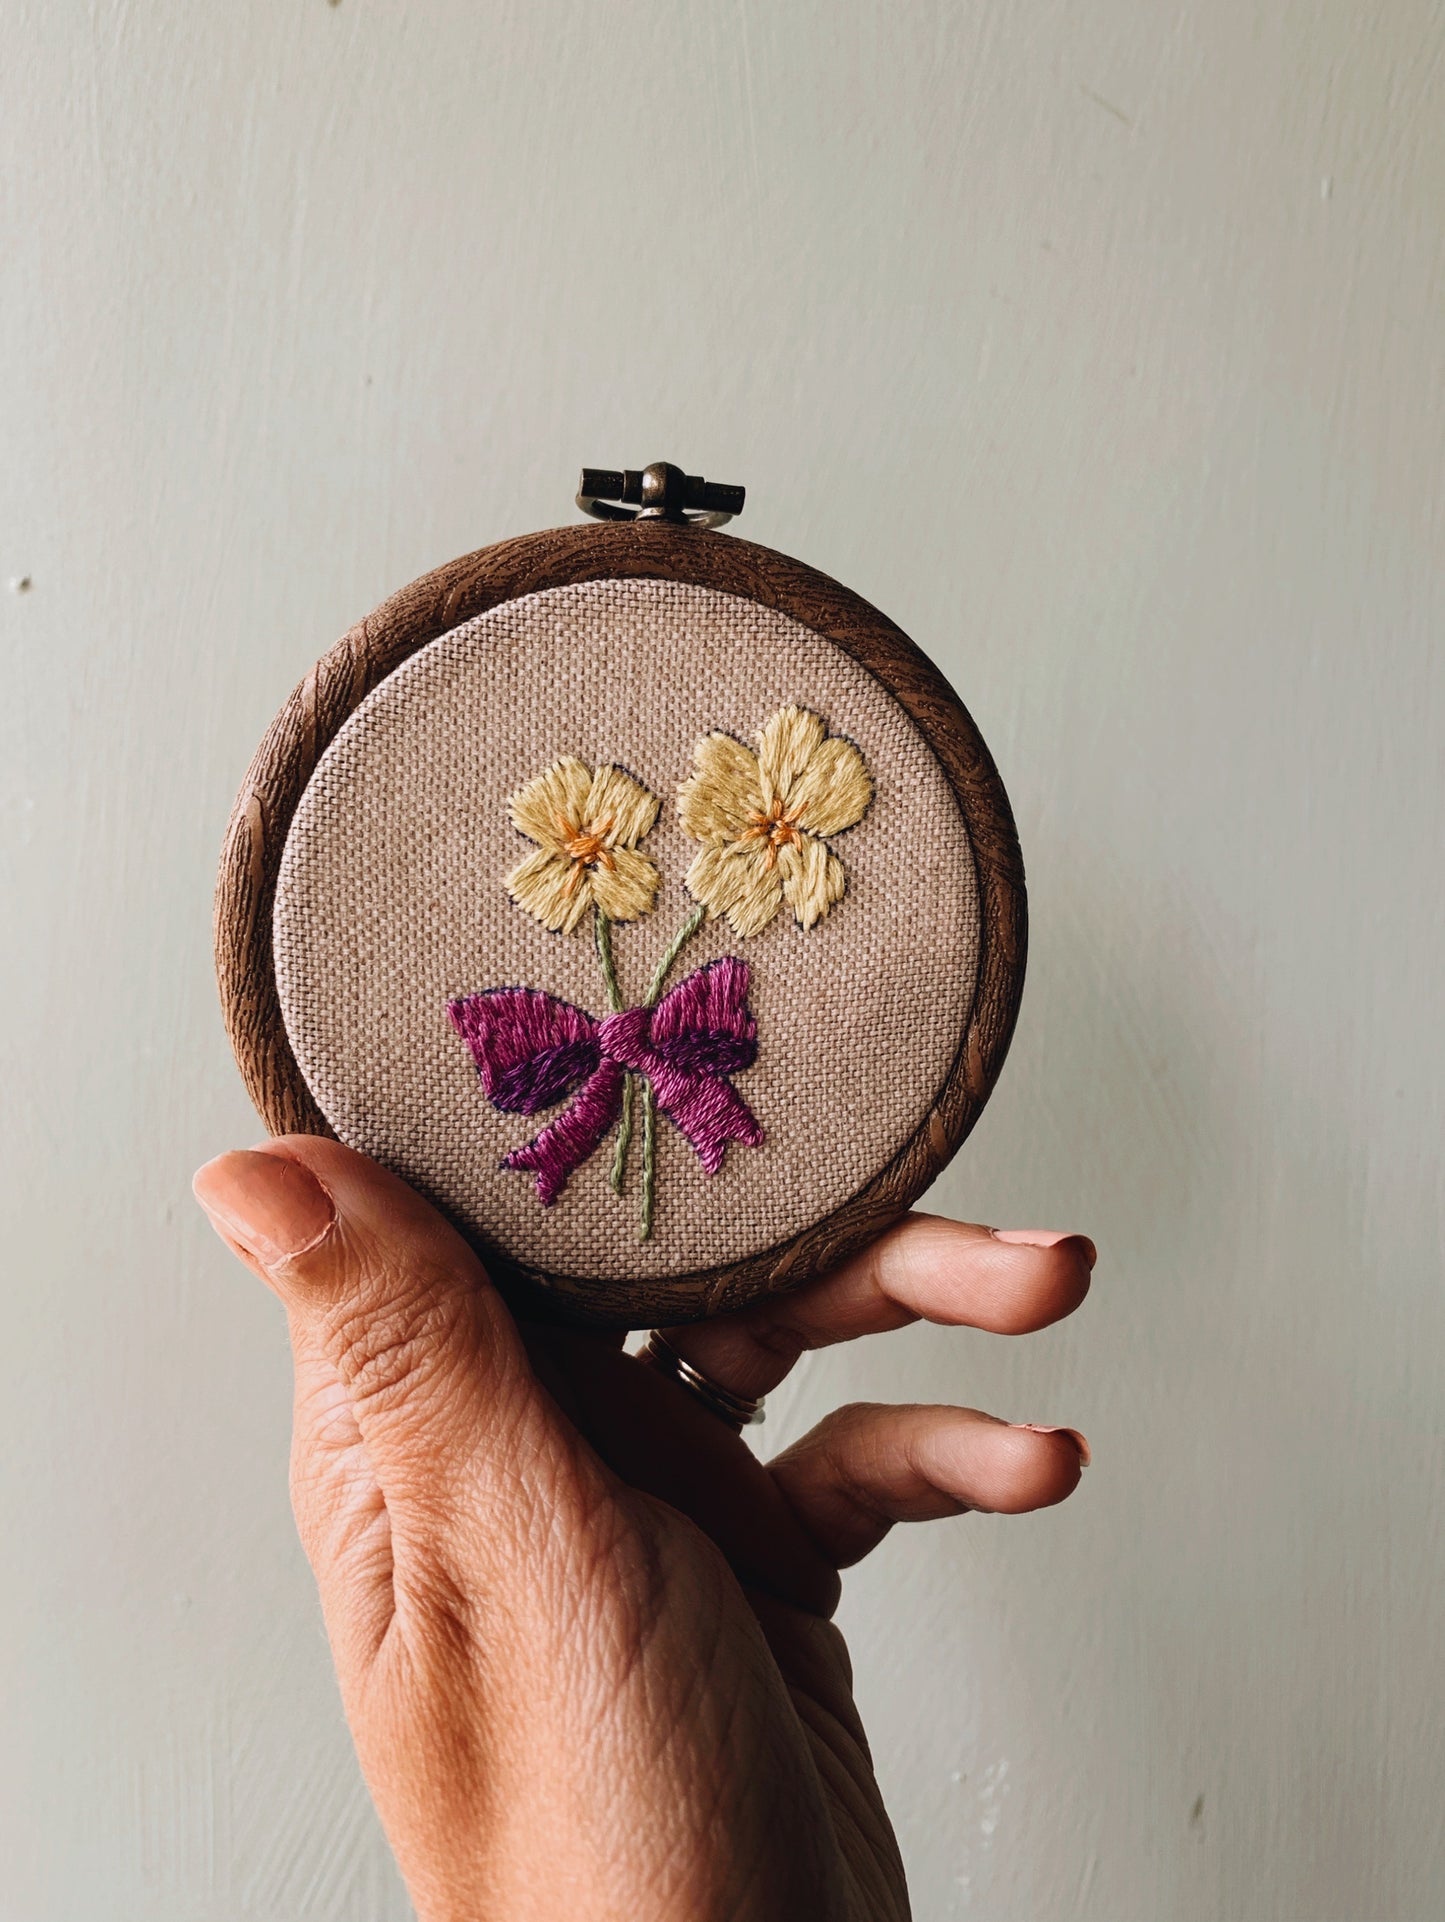 Vintage Floral Embroidery Hoop / Hanging